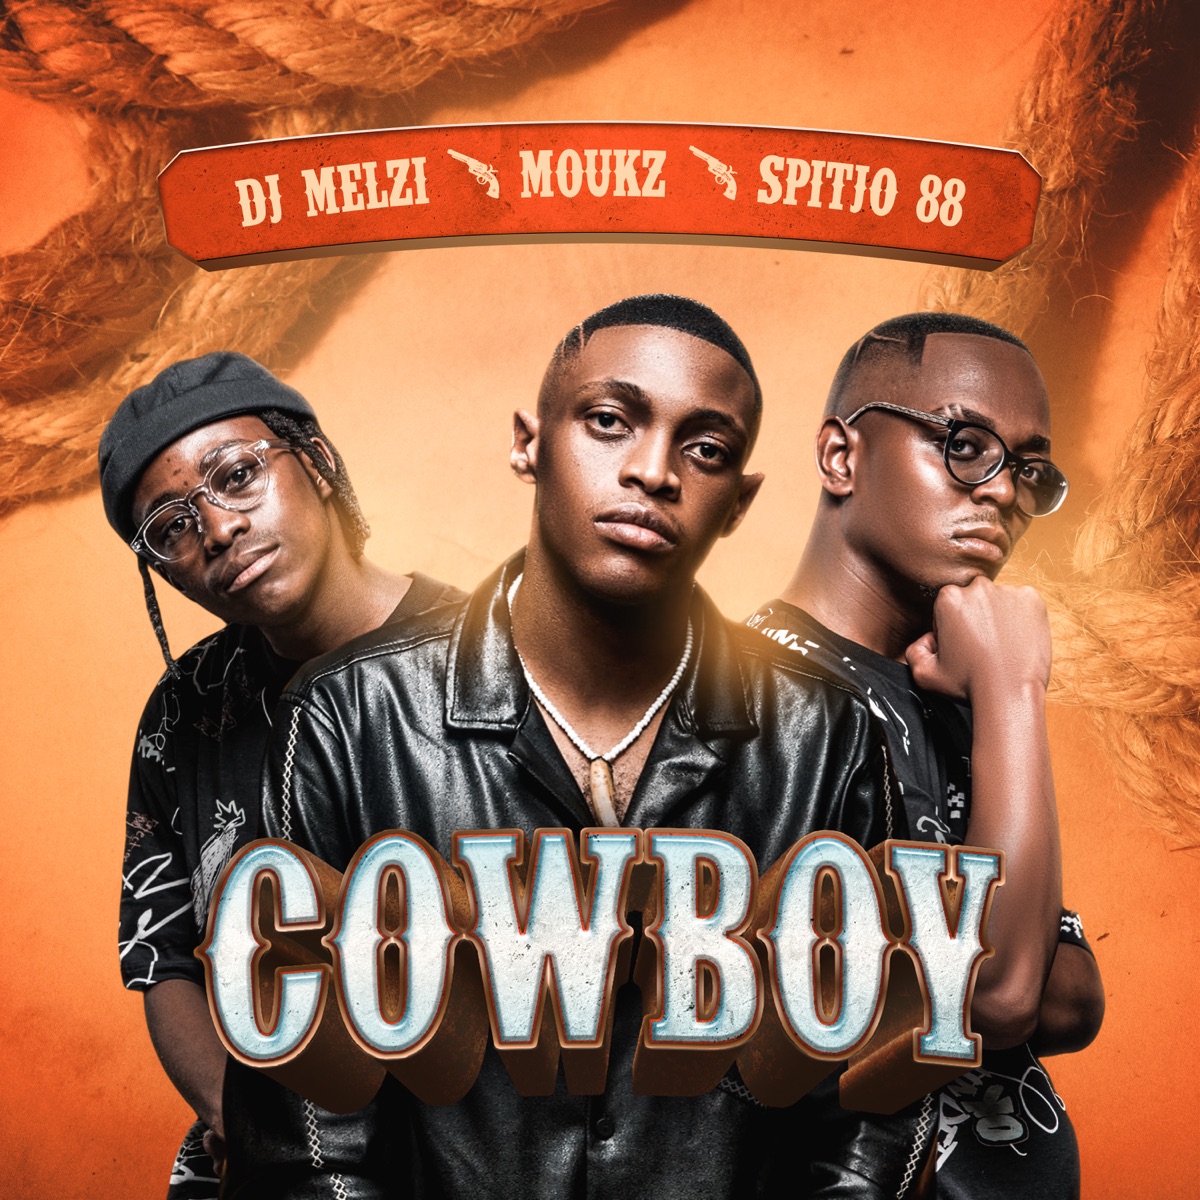 DJ Melzi, Moukz & Spitjo88 – Cowboy I